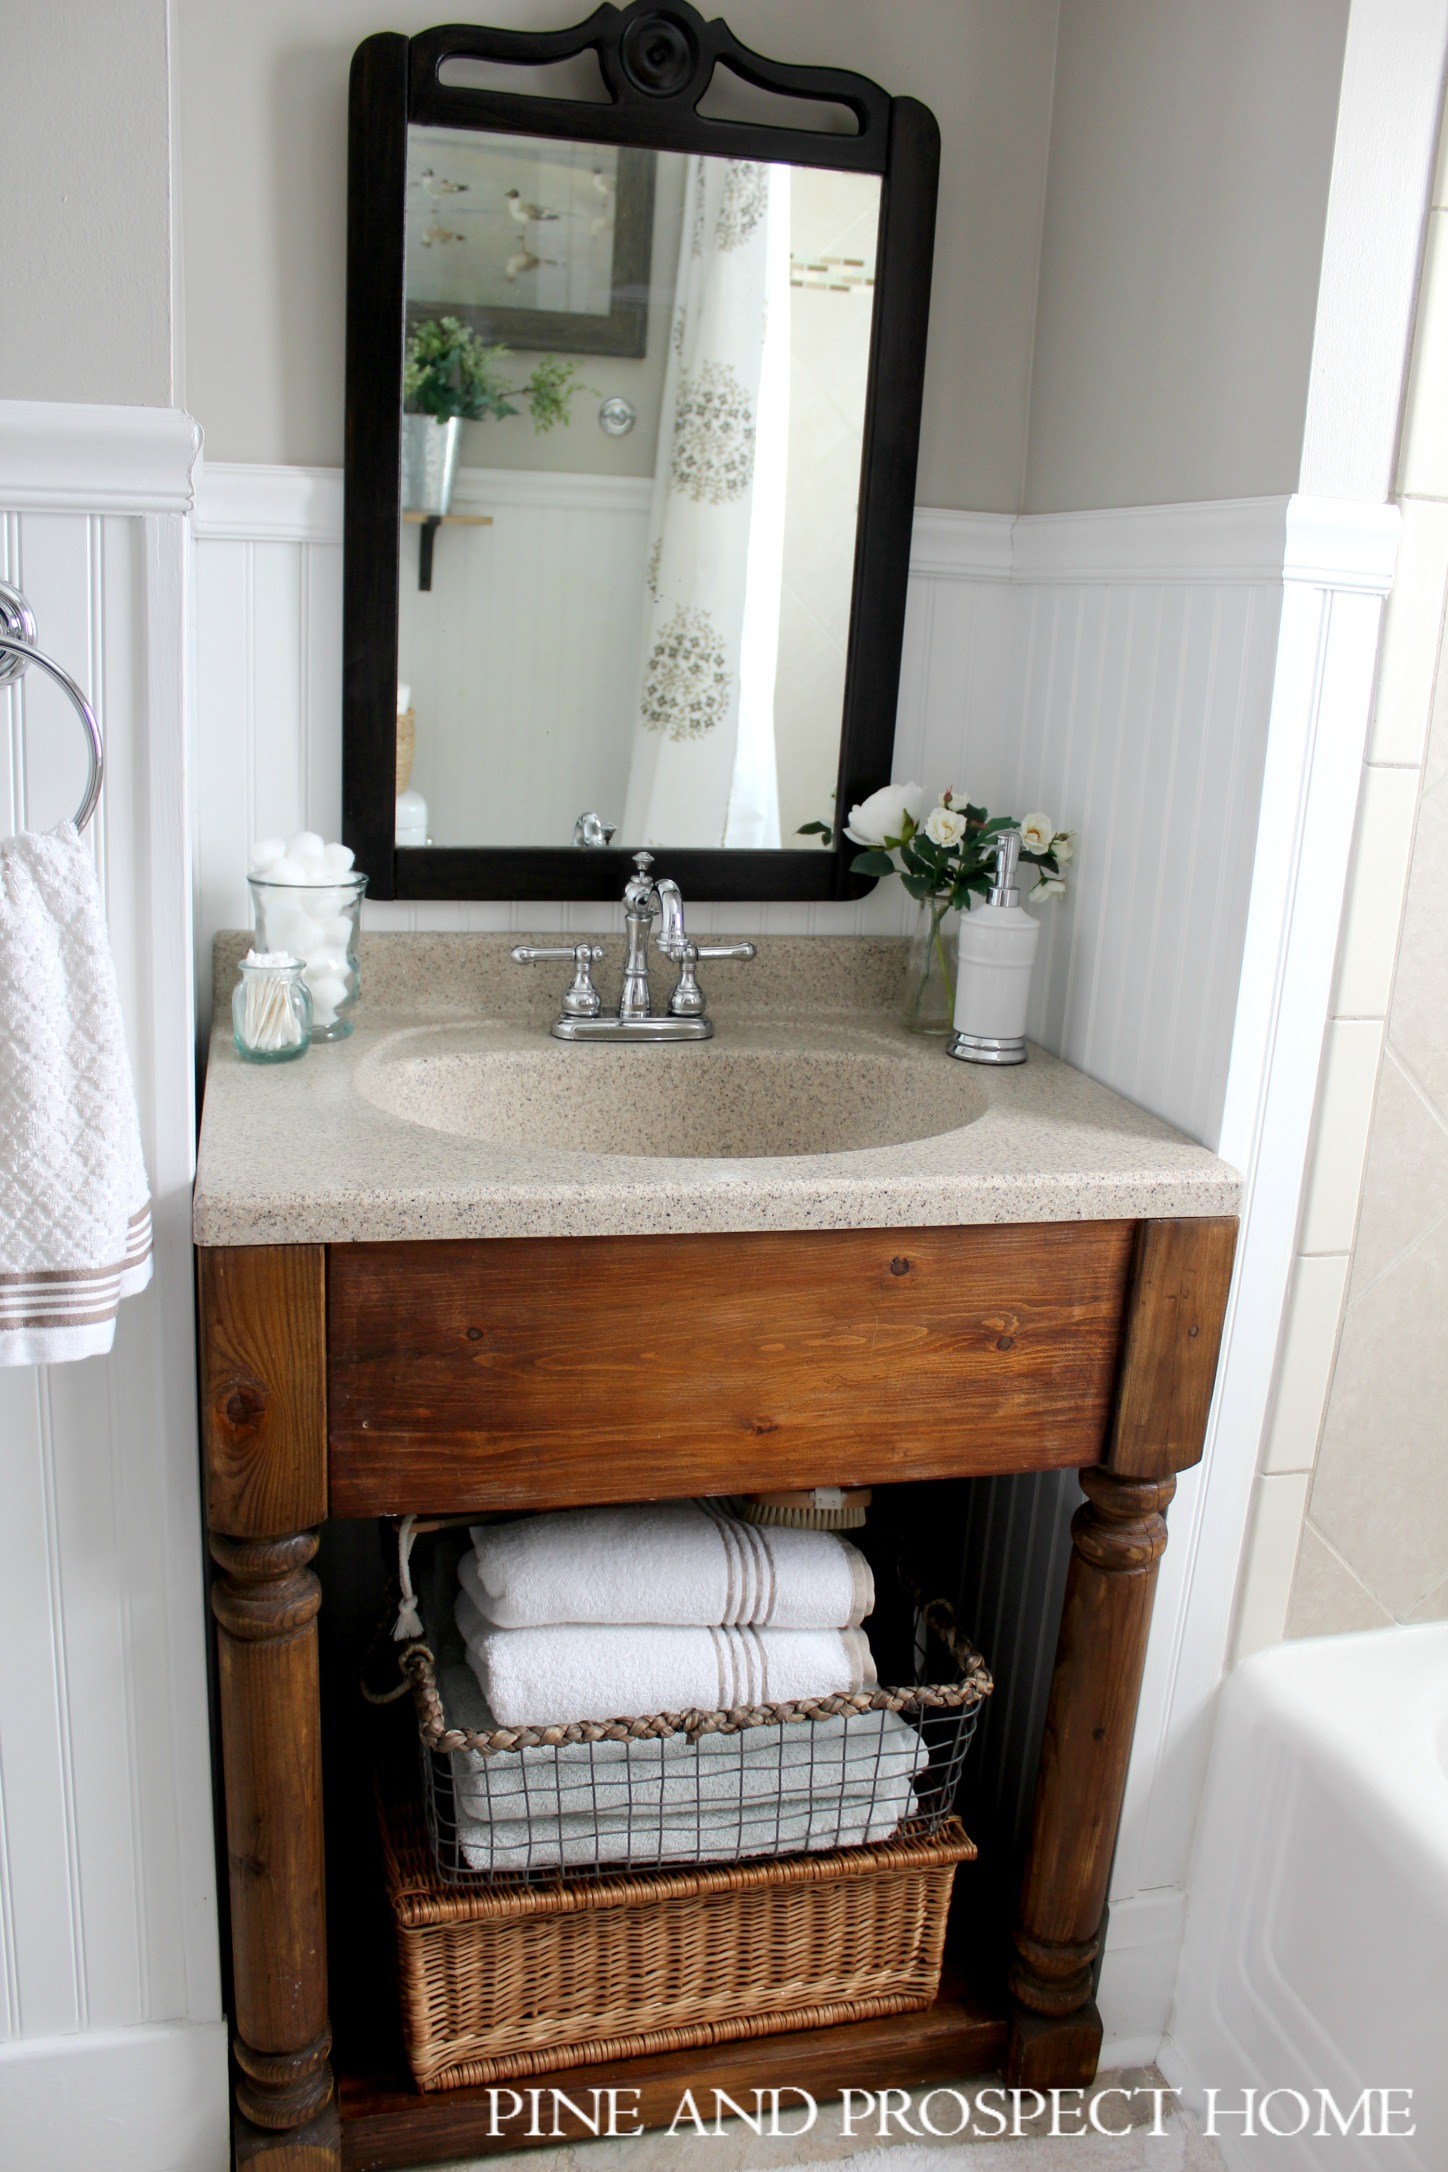 Rustic wood bathroom vanity #bathroom #bathroomvanity #bathroomdecor #farmhousebathroom #farmhousedecor